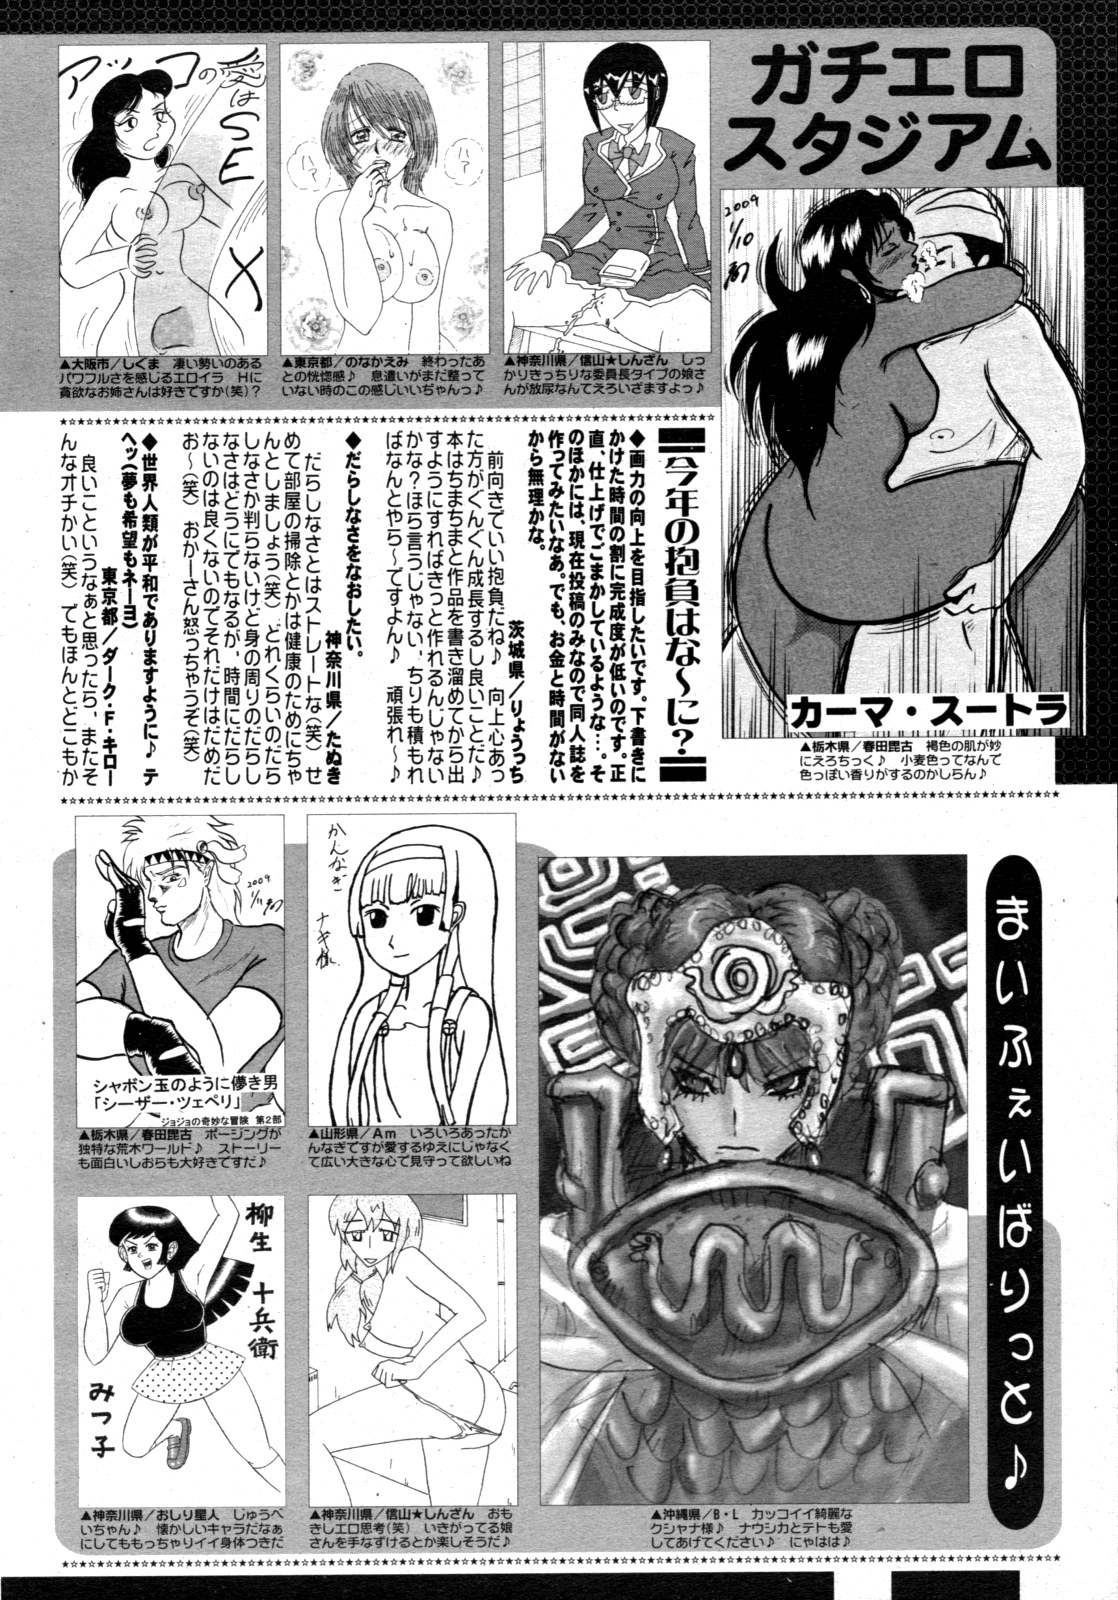 コミックゼロエクス Vol.15 2009年3月号